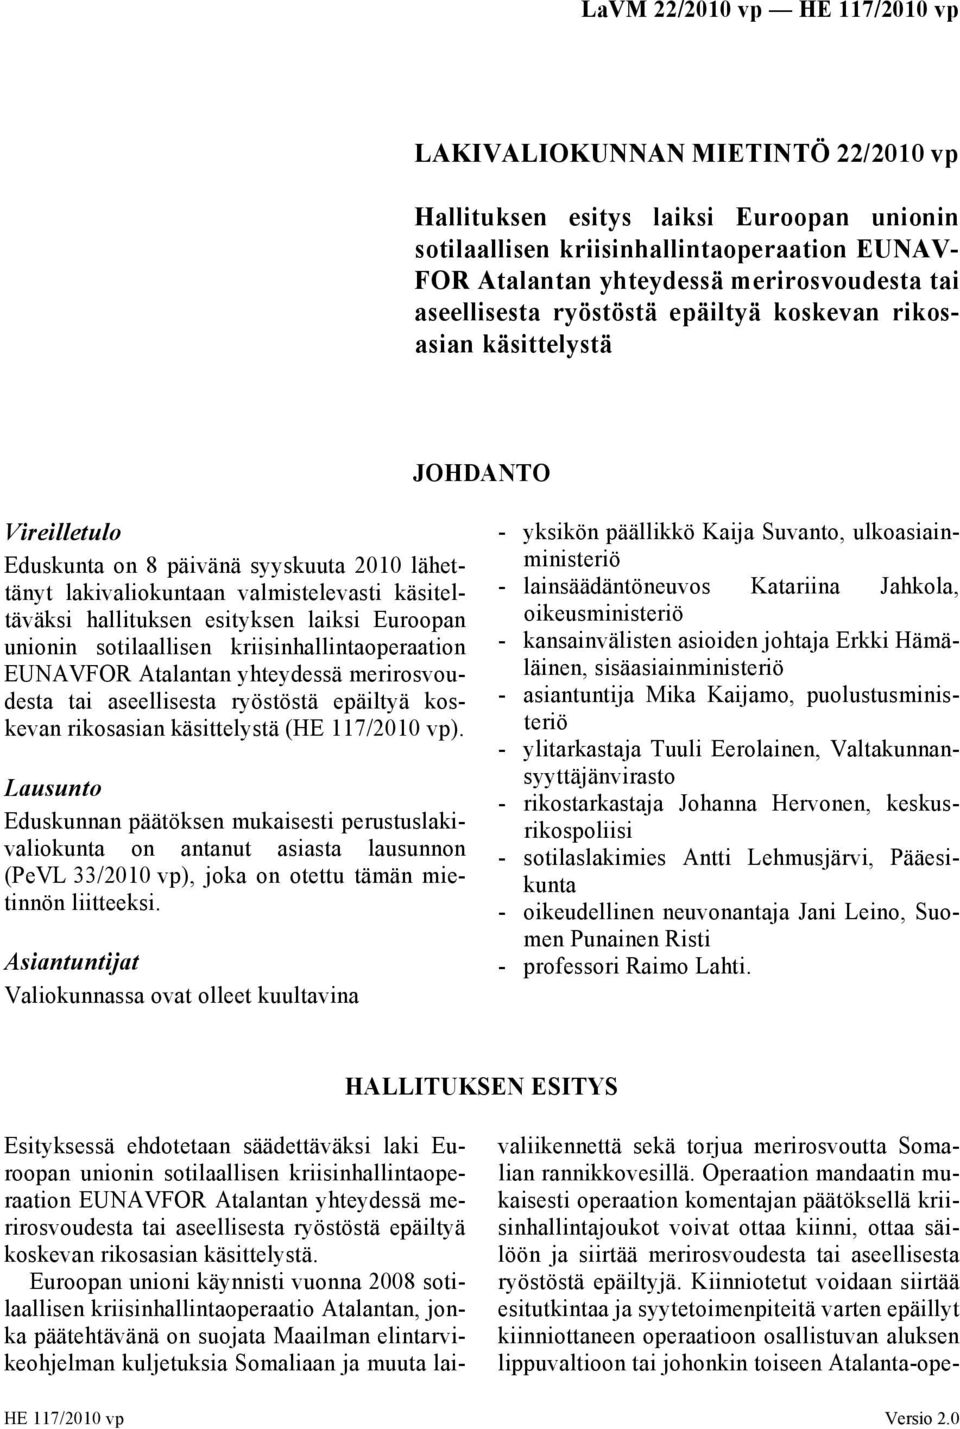 unionin sotilaallisen kriisinhallintaoperaation EUNAVFOR Atalantan yhteydessä merirosvoudesta tai aseellisesta ryöstöstä epäiltyä koskevan rikosasian käsittelystä (HE 117/2010 vp).